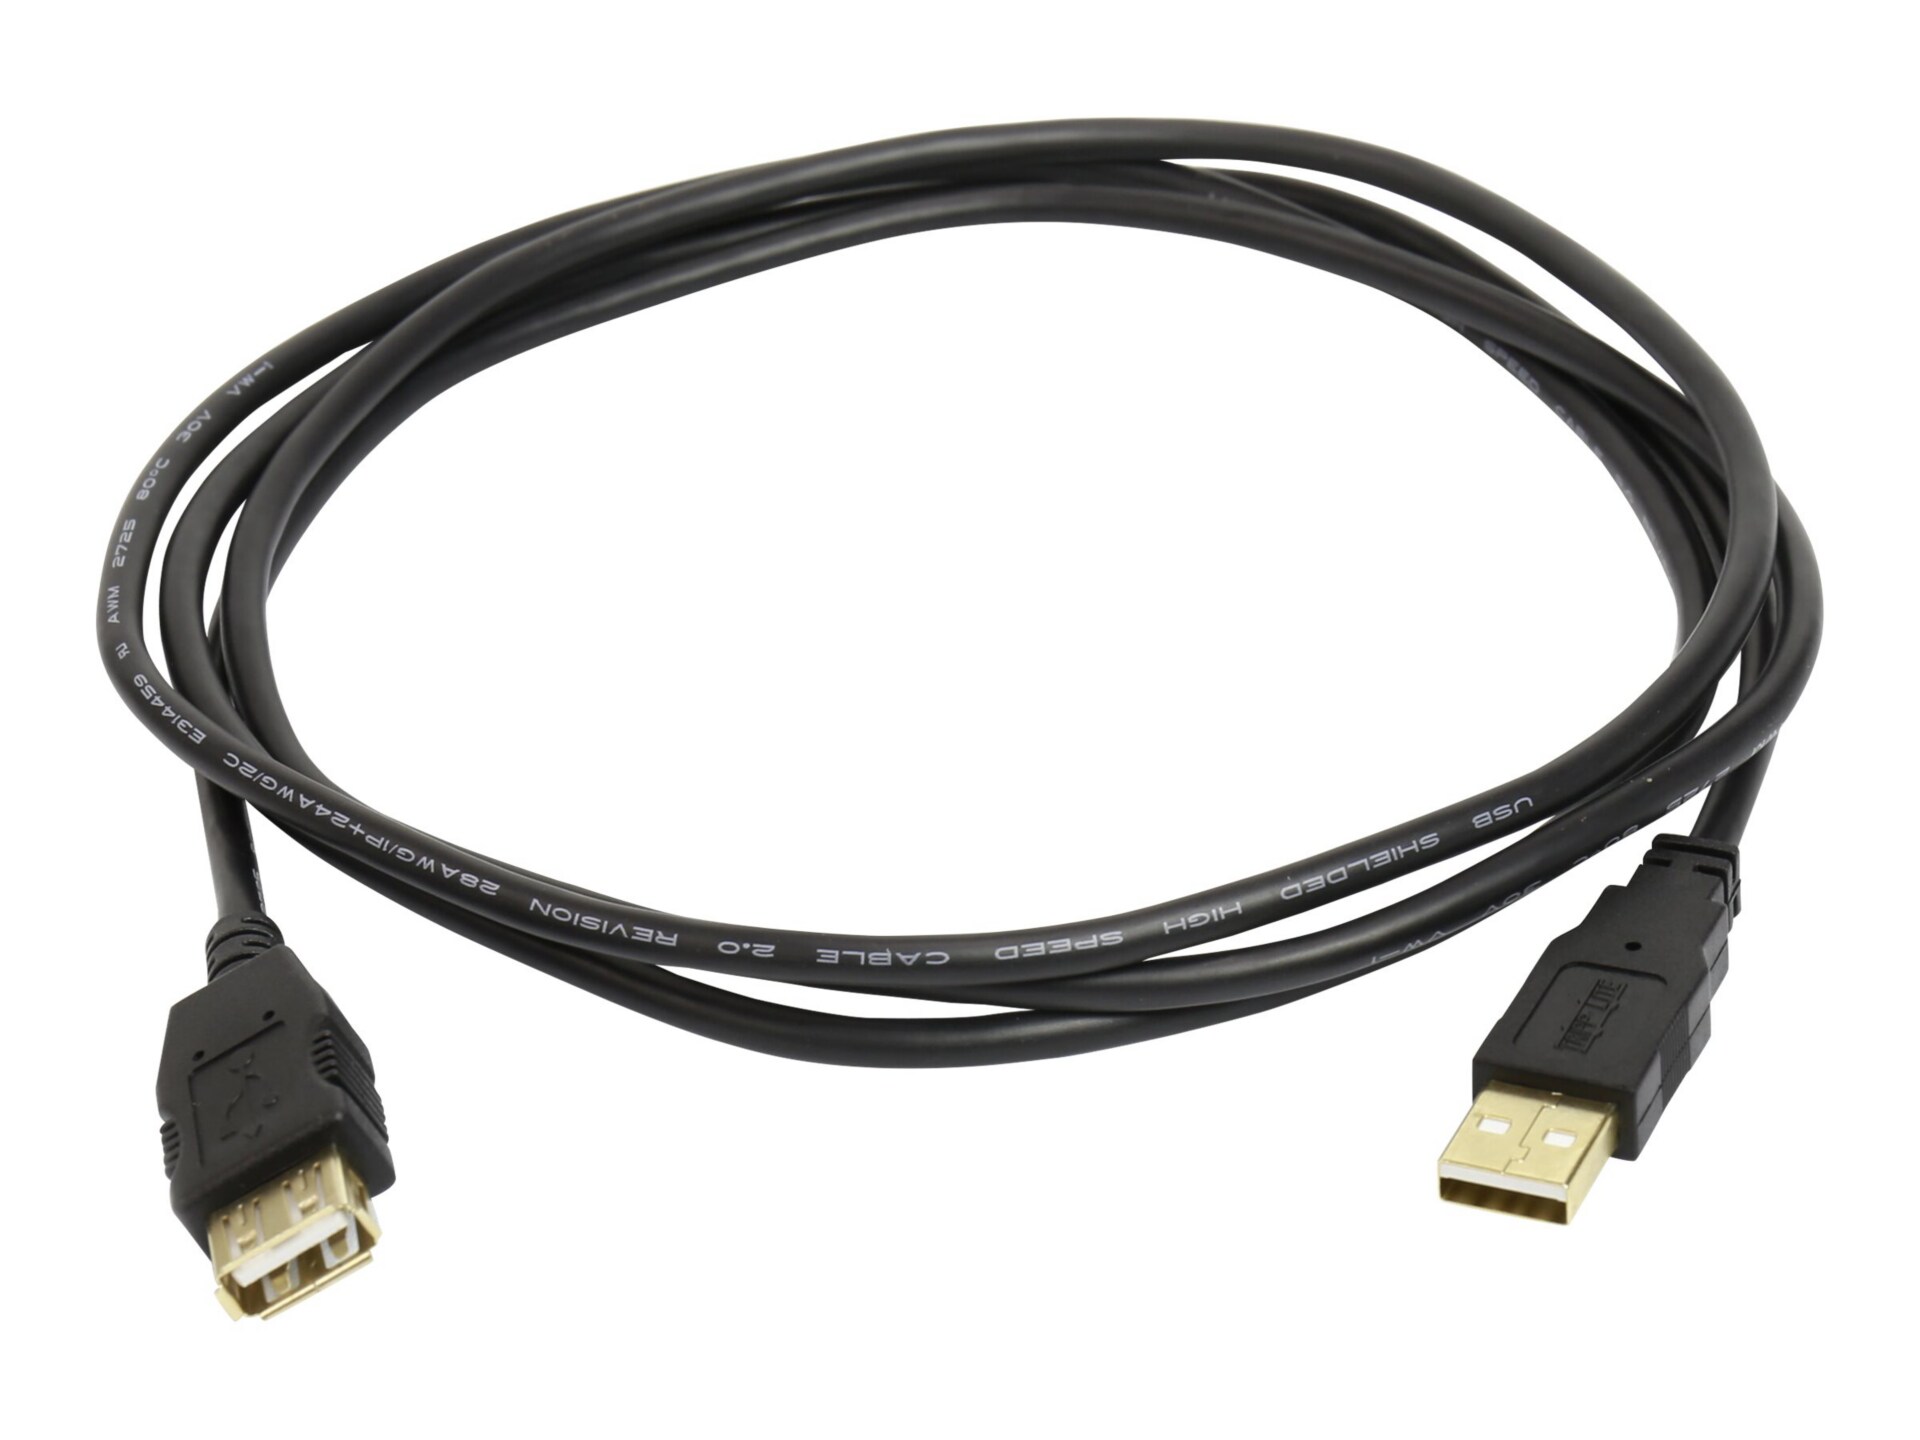 Ergotron - rallonge de câble USB - USB pour USB - 1.8 m